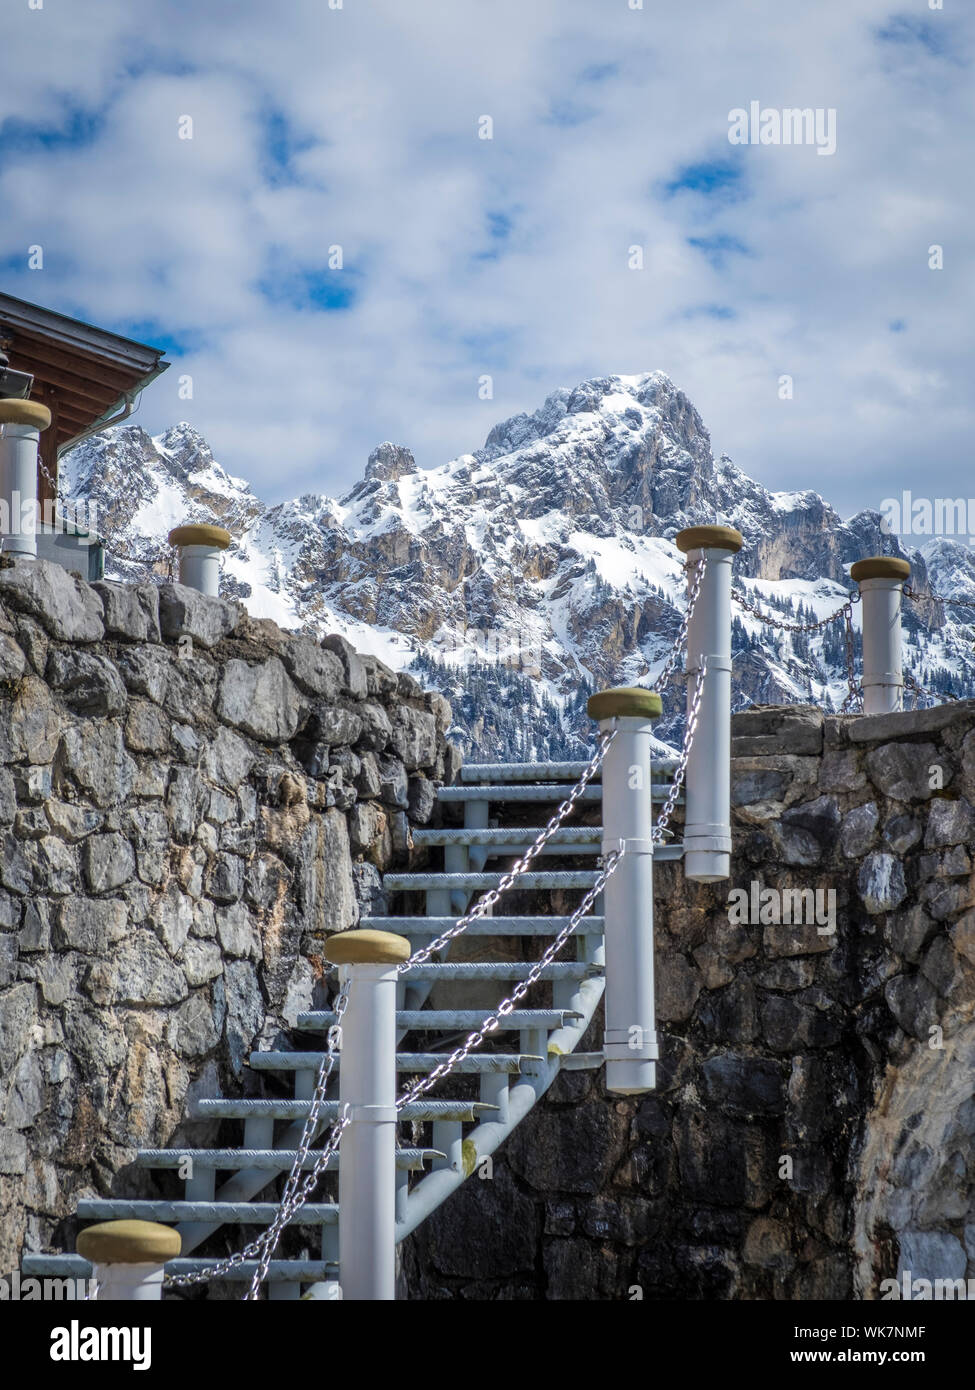 Stiegen zum Himmel in der Tiroler Bergwelt Foto Stock